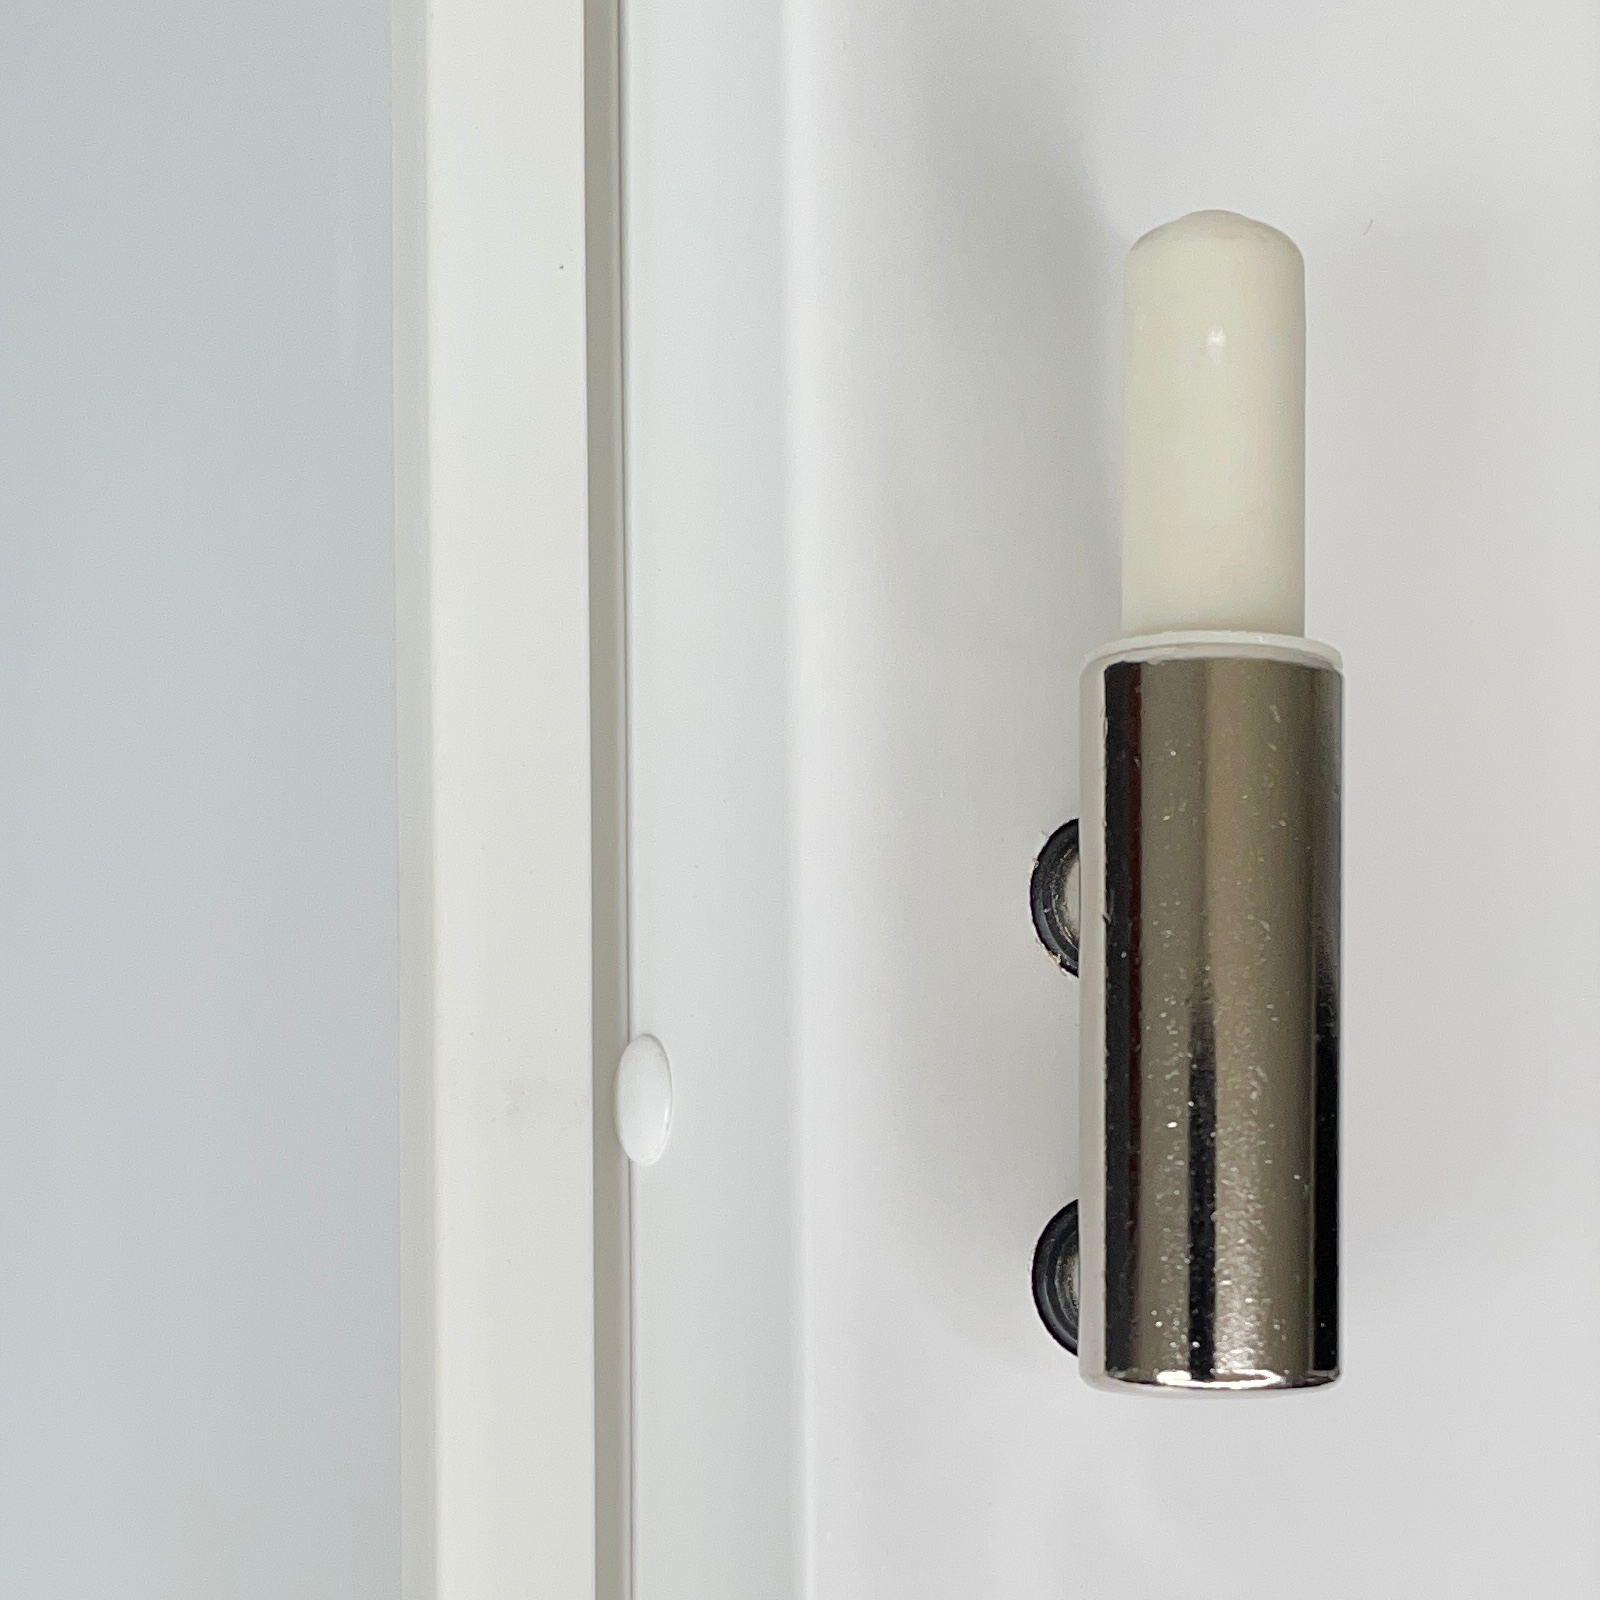 Zimmertür mit Zarge und Lichtausschnitt brillant-weiß 3 Rillen aufrecht Designkante - Modell Designtür VM33LAS